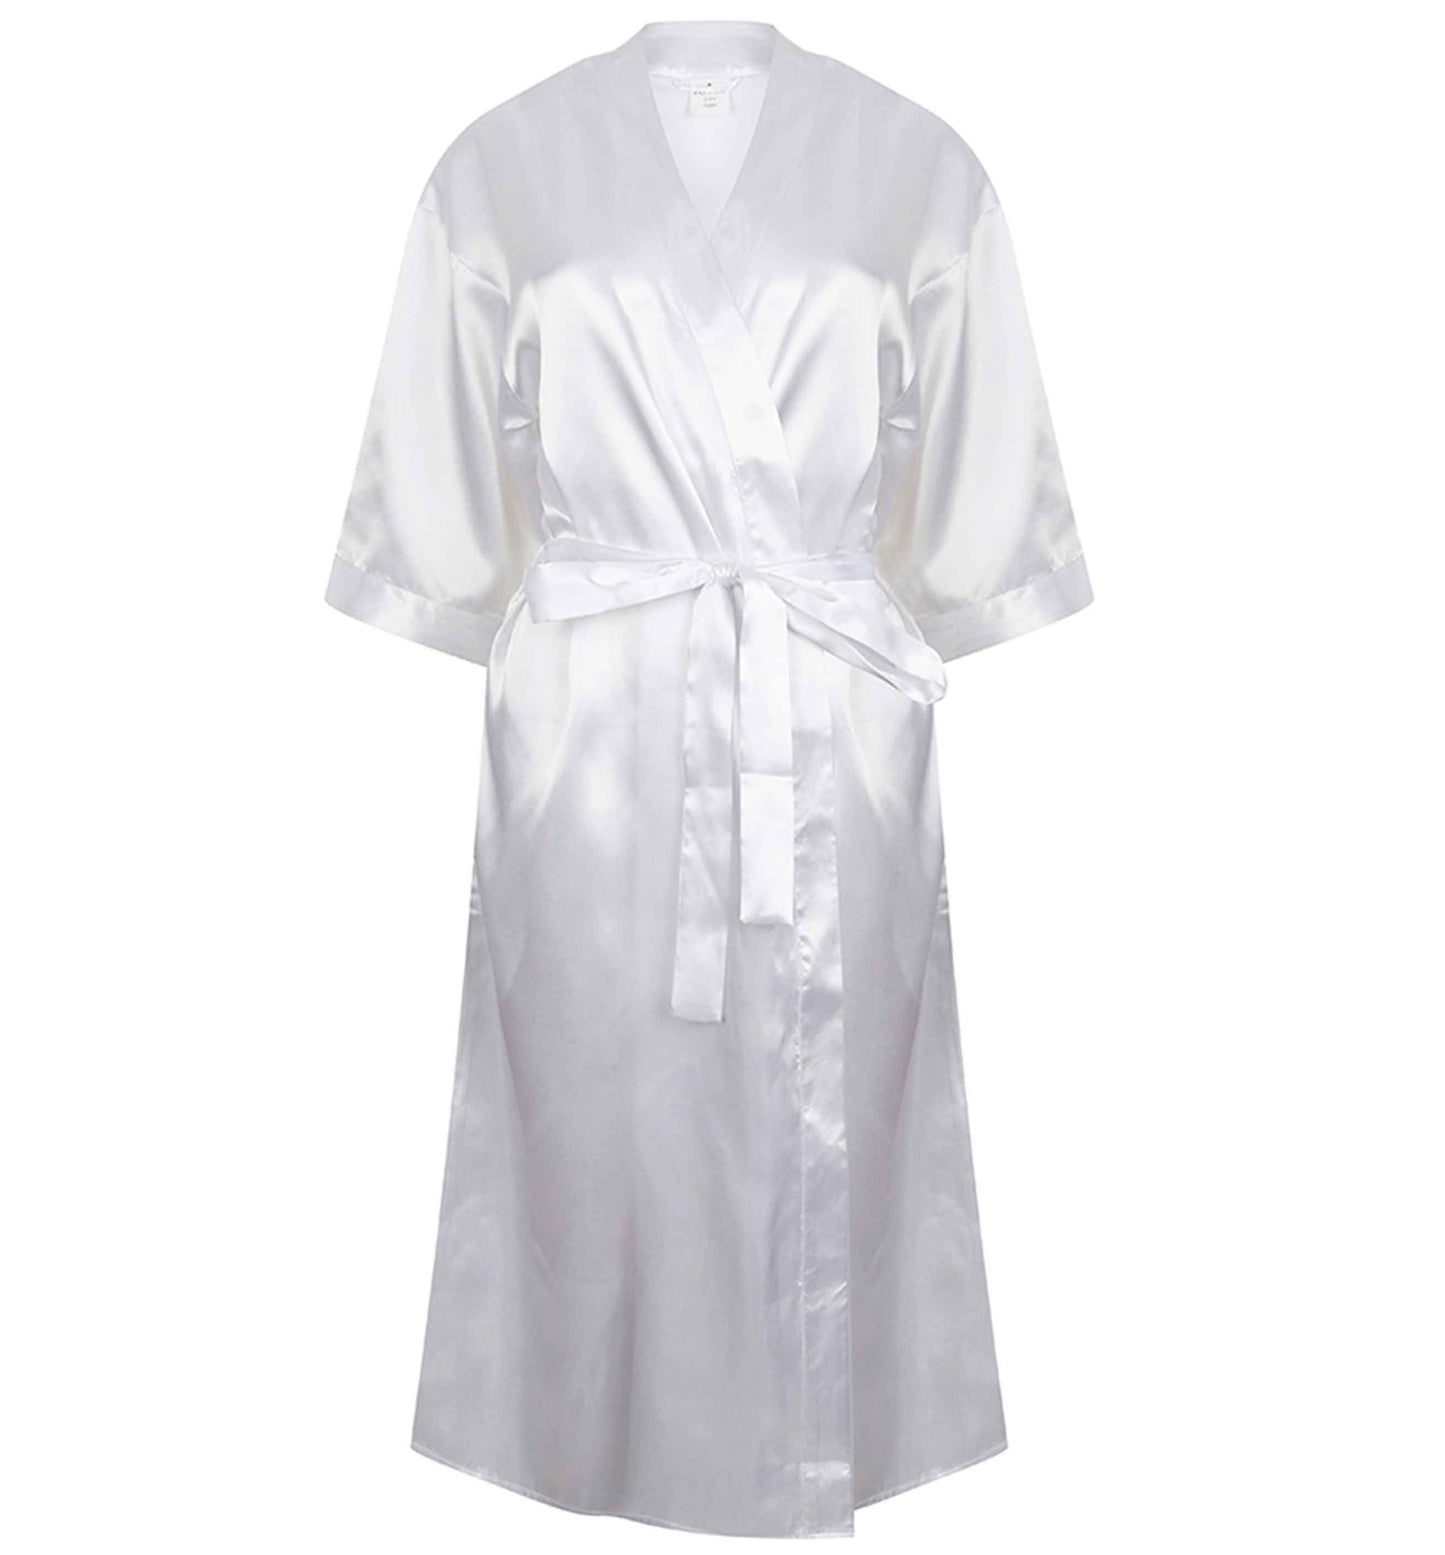 King of christmas | 8-18 | Kimono style satin robe | Ladies dressing gown